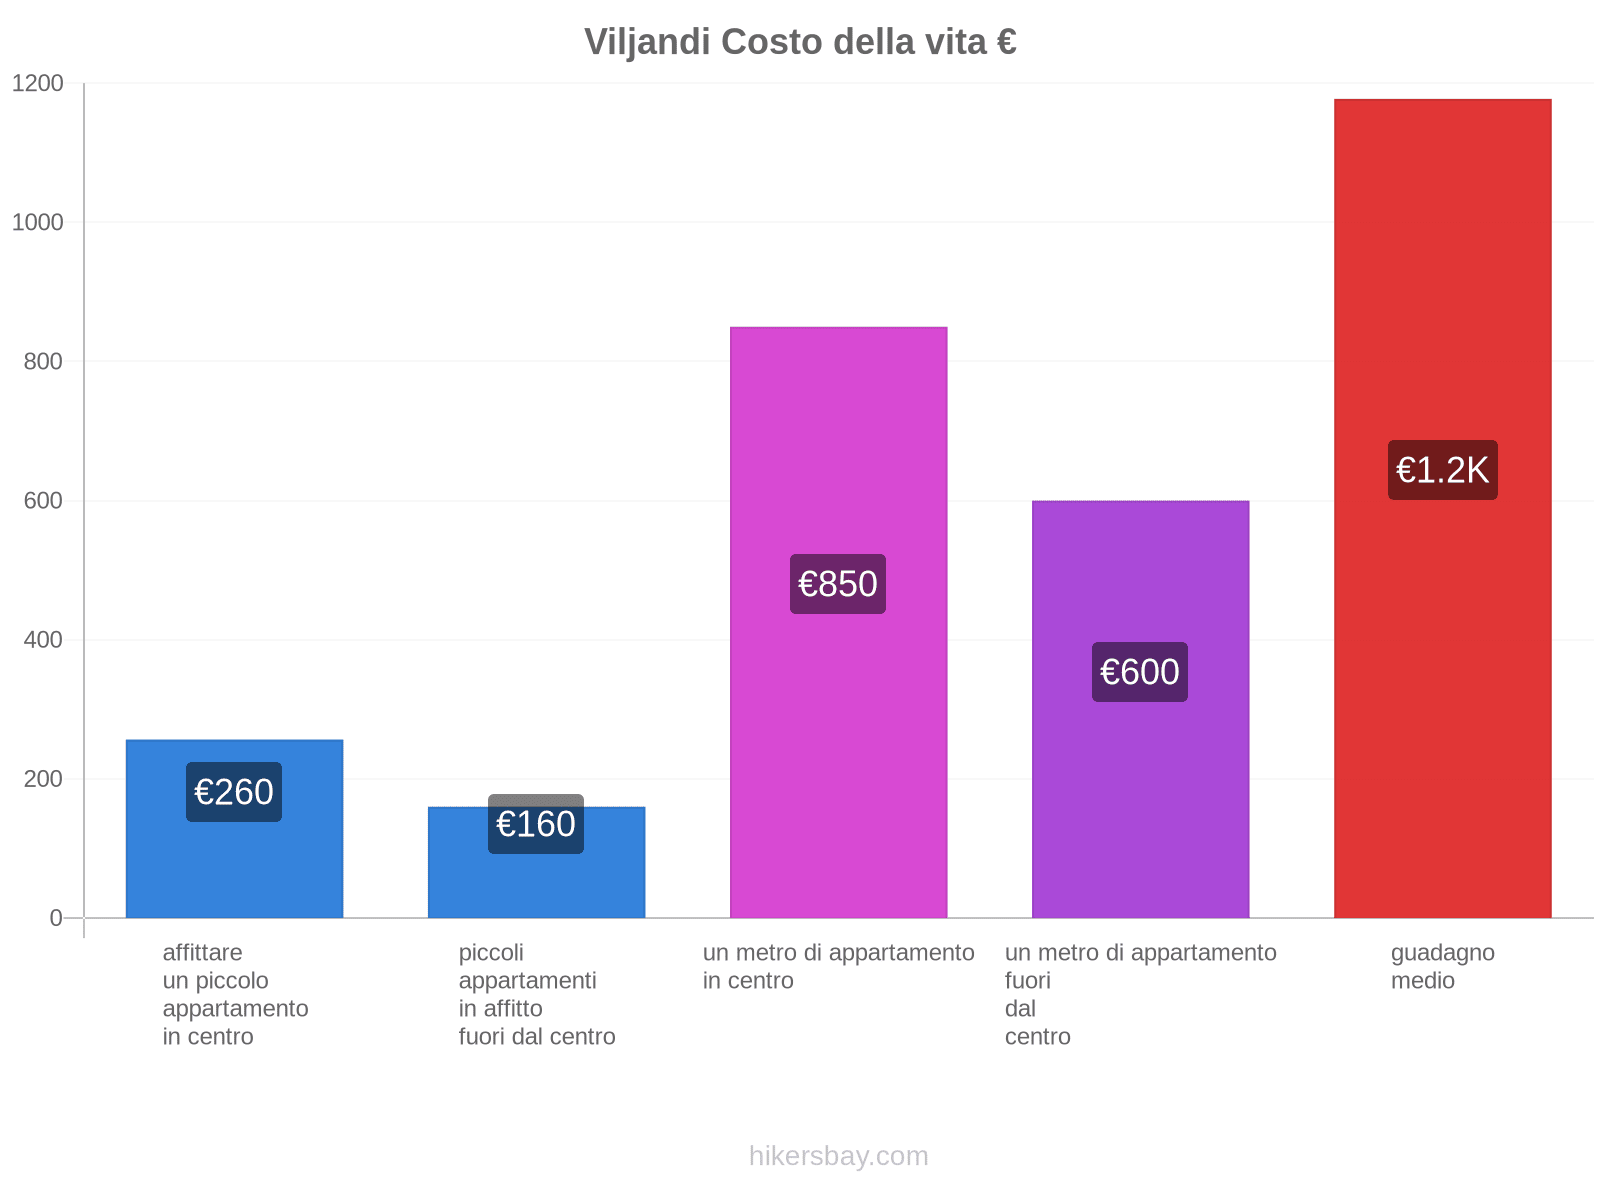 Viljandi costo della vita hikersbay.com